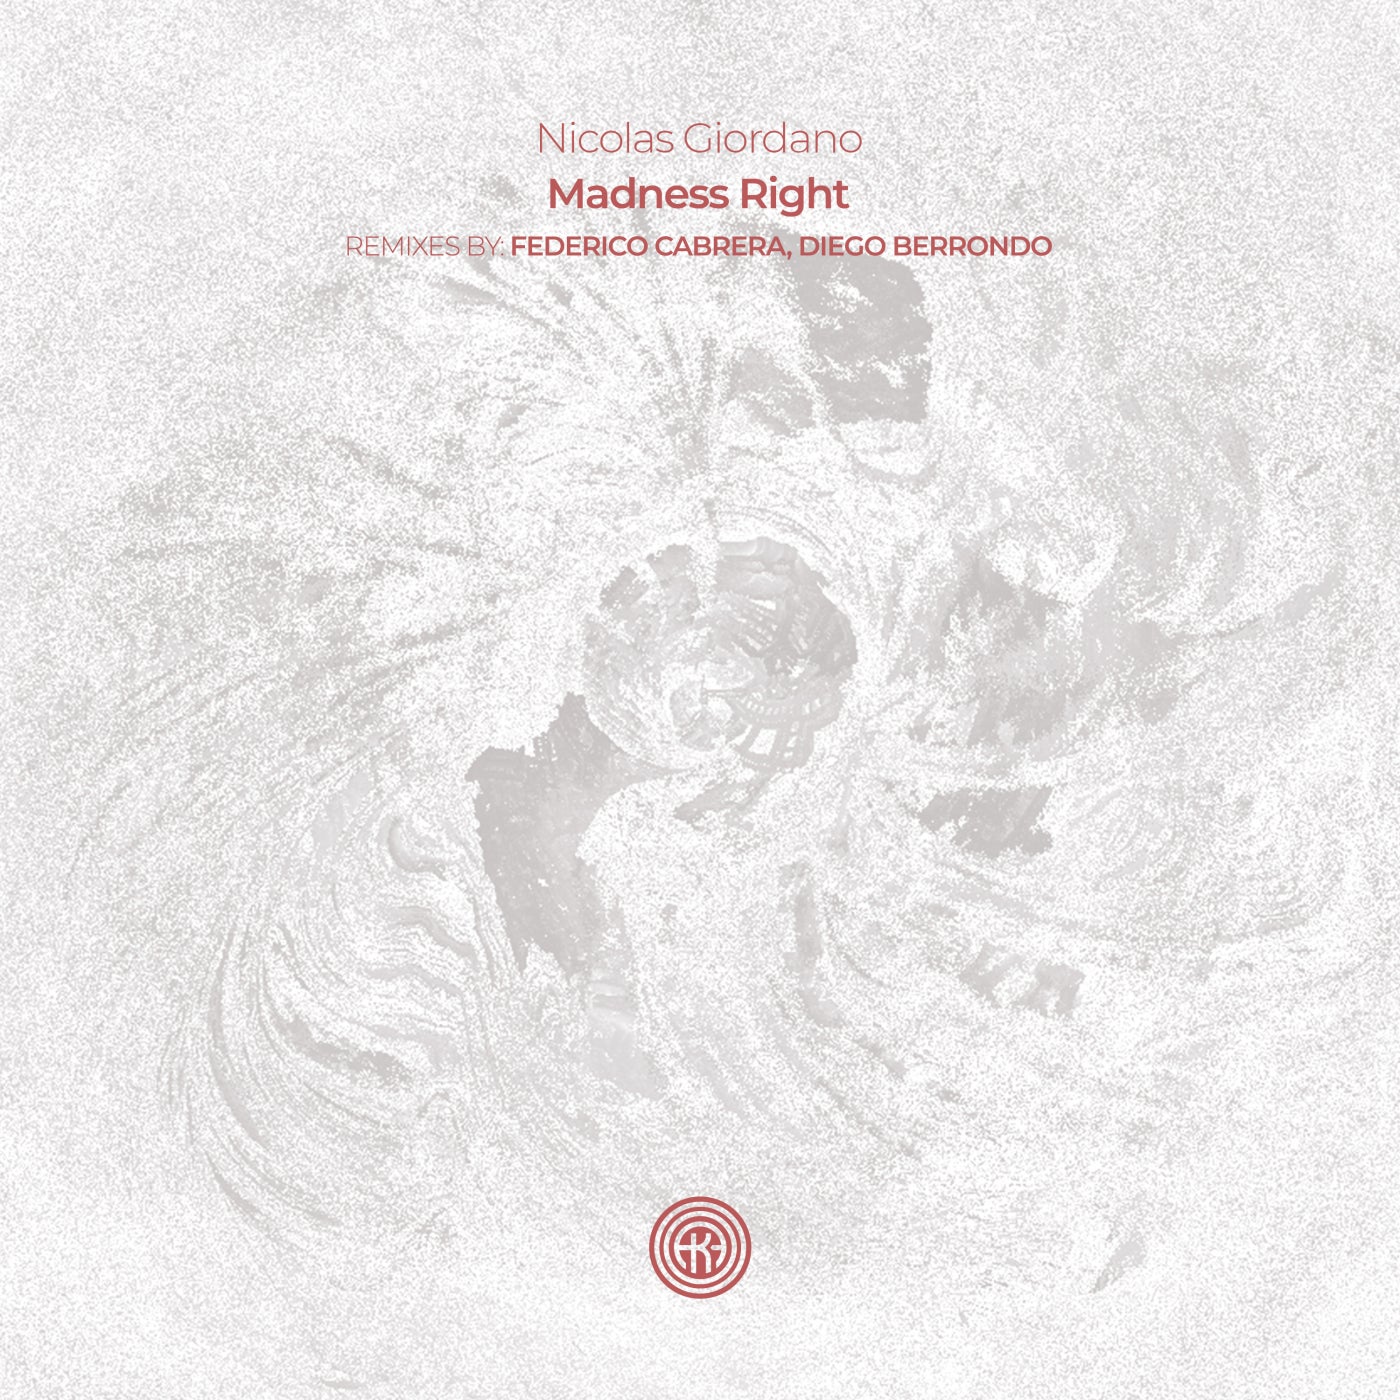 Cover - Nicolas Giordano - Madness Right (Federico Cabrera Remix)